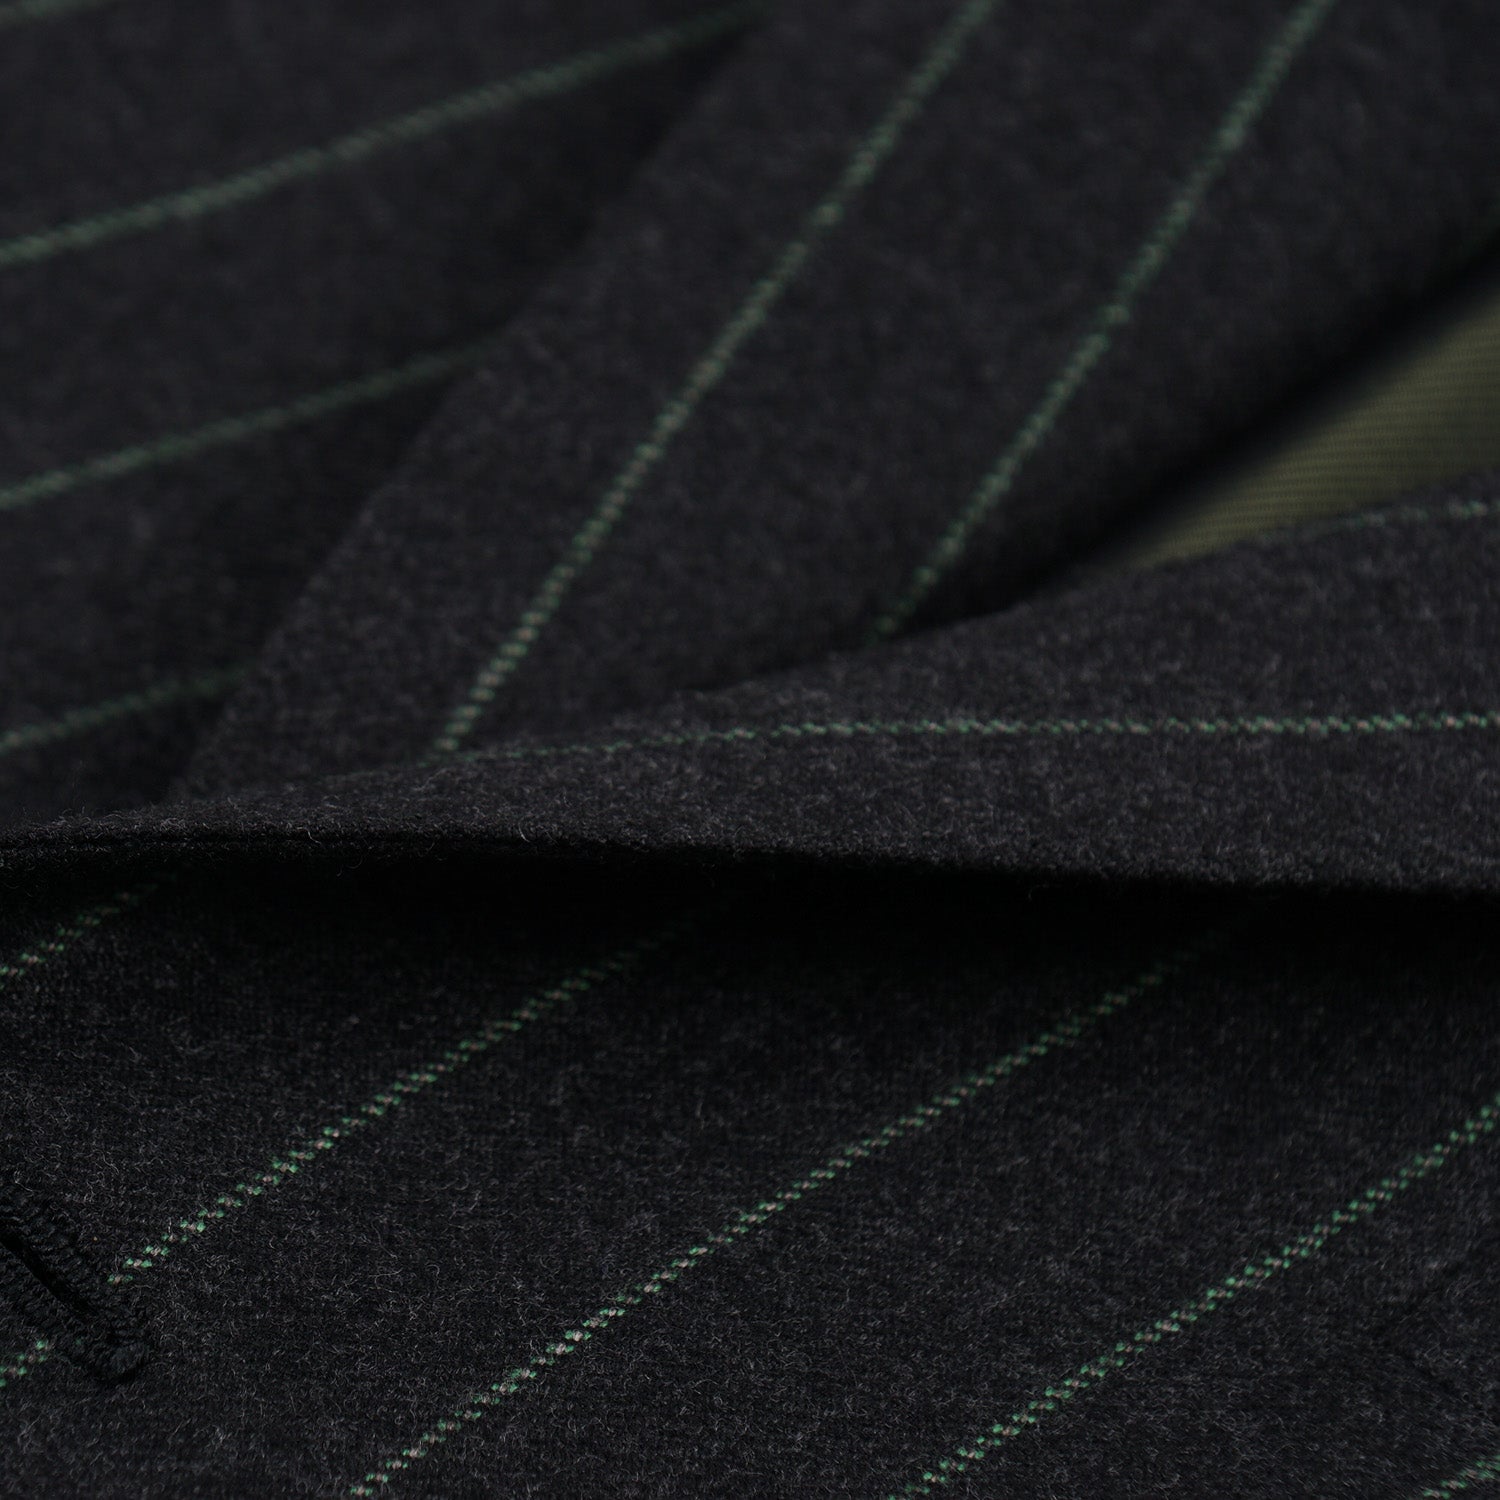 Cesare Attolini Slim-Fit Flannel Wool Suit - Top Shelf Apparel